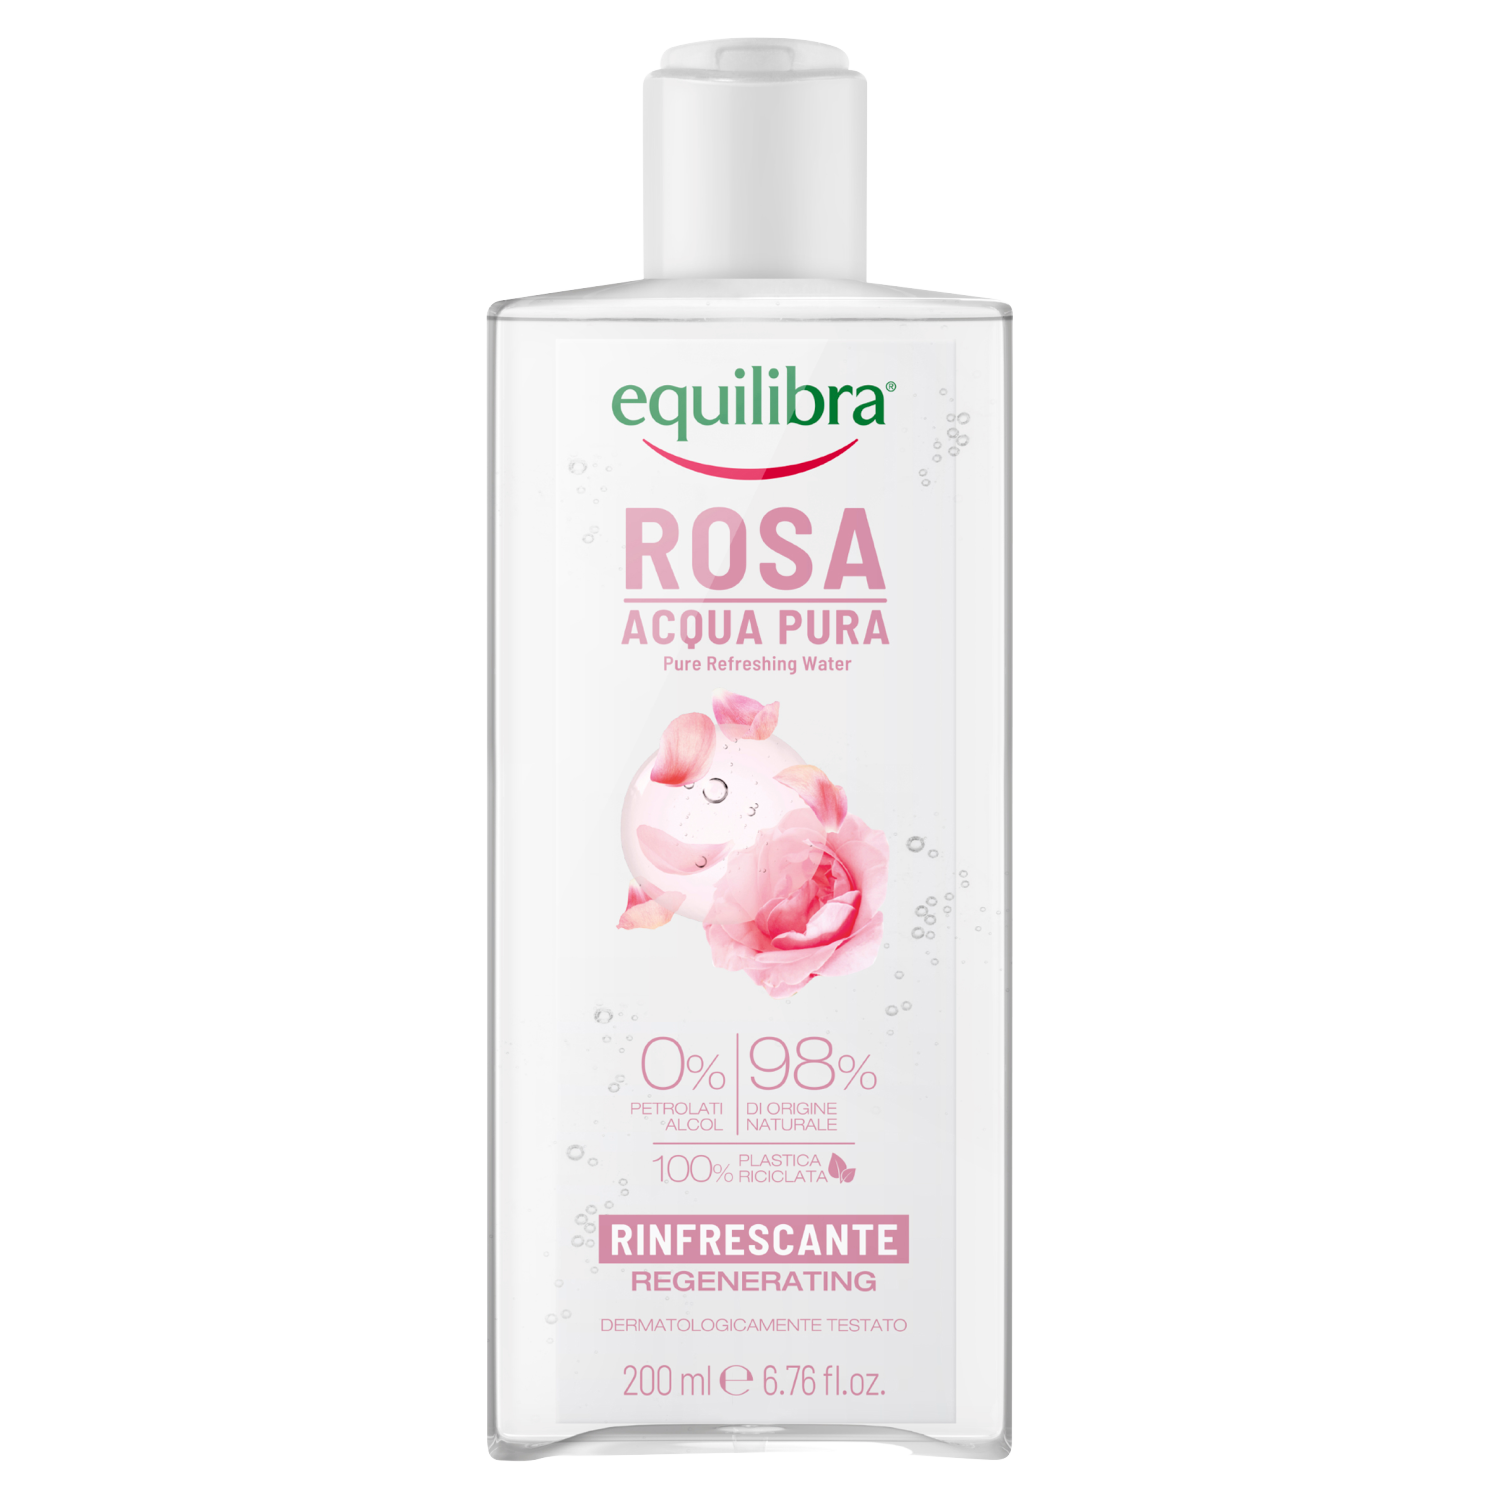 Equilibra Rosa освежающая розовая вода для лица, 200 мл equilibra rosa освежающая розовая вода для лица 200 мл